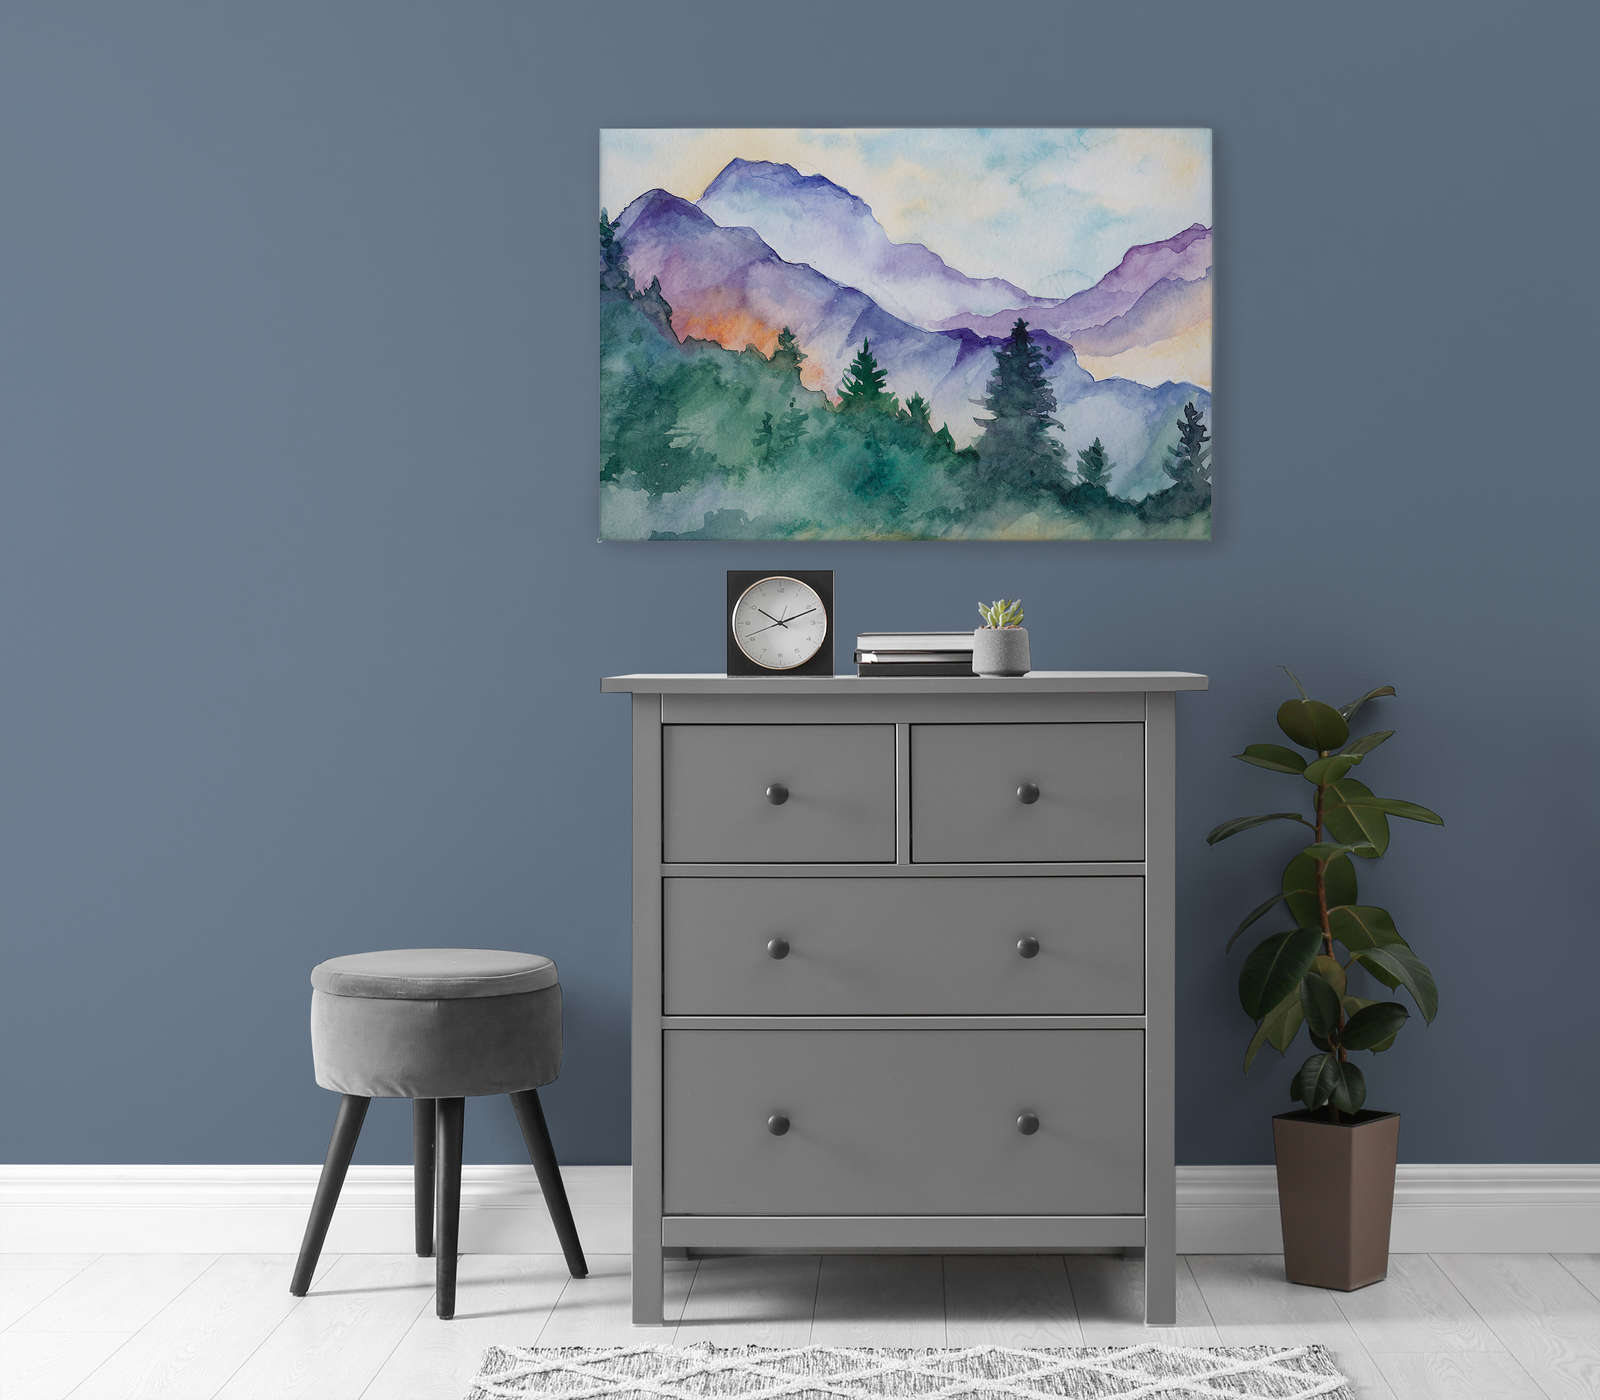             Leinwandbild mit Wasserfarben gemalte Berglandschaft – 0,90 m x 0,60 m
        